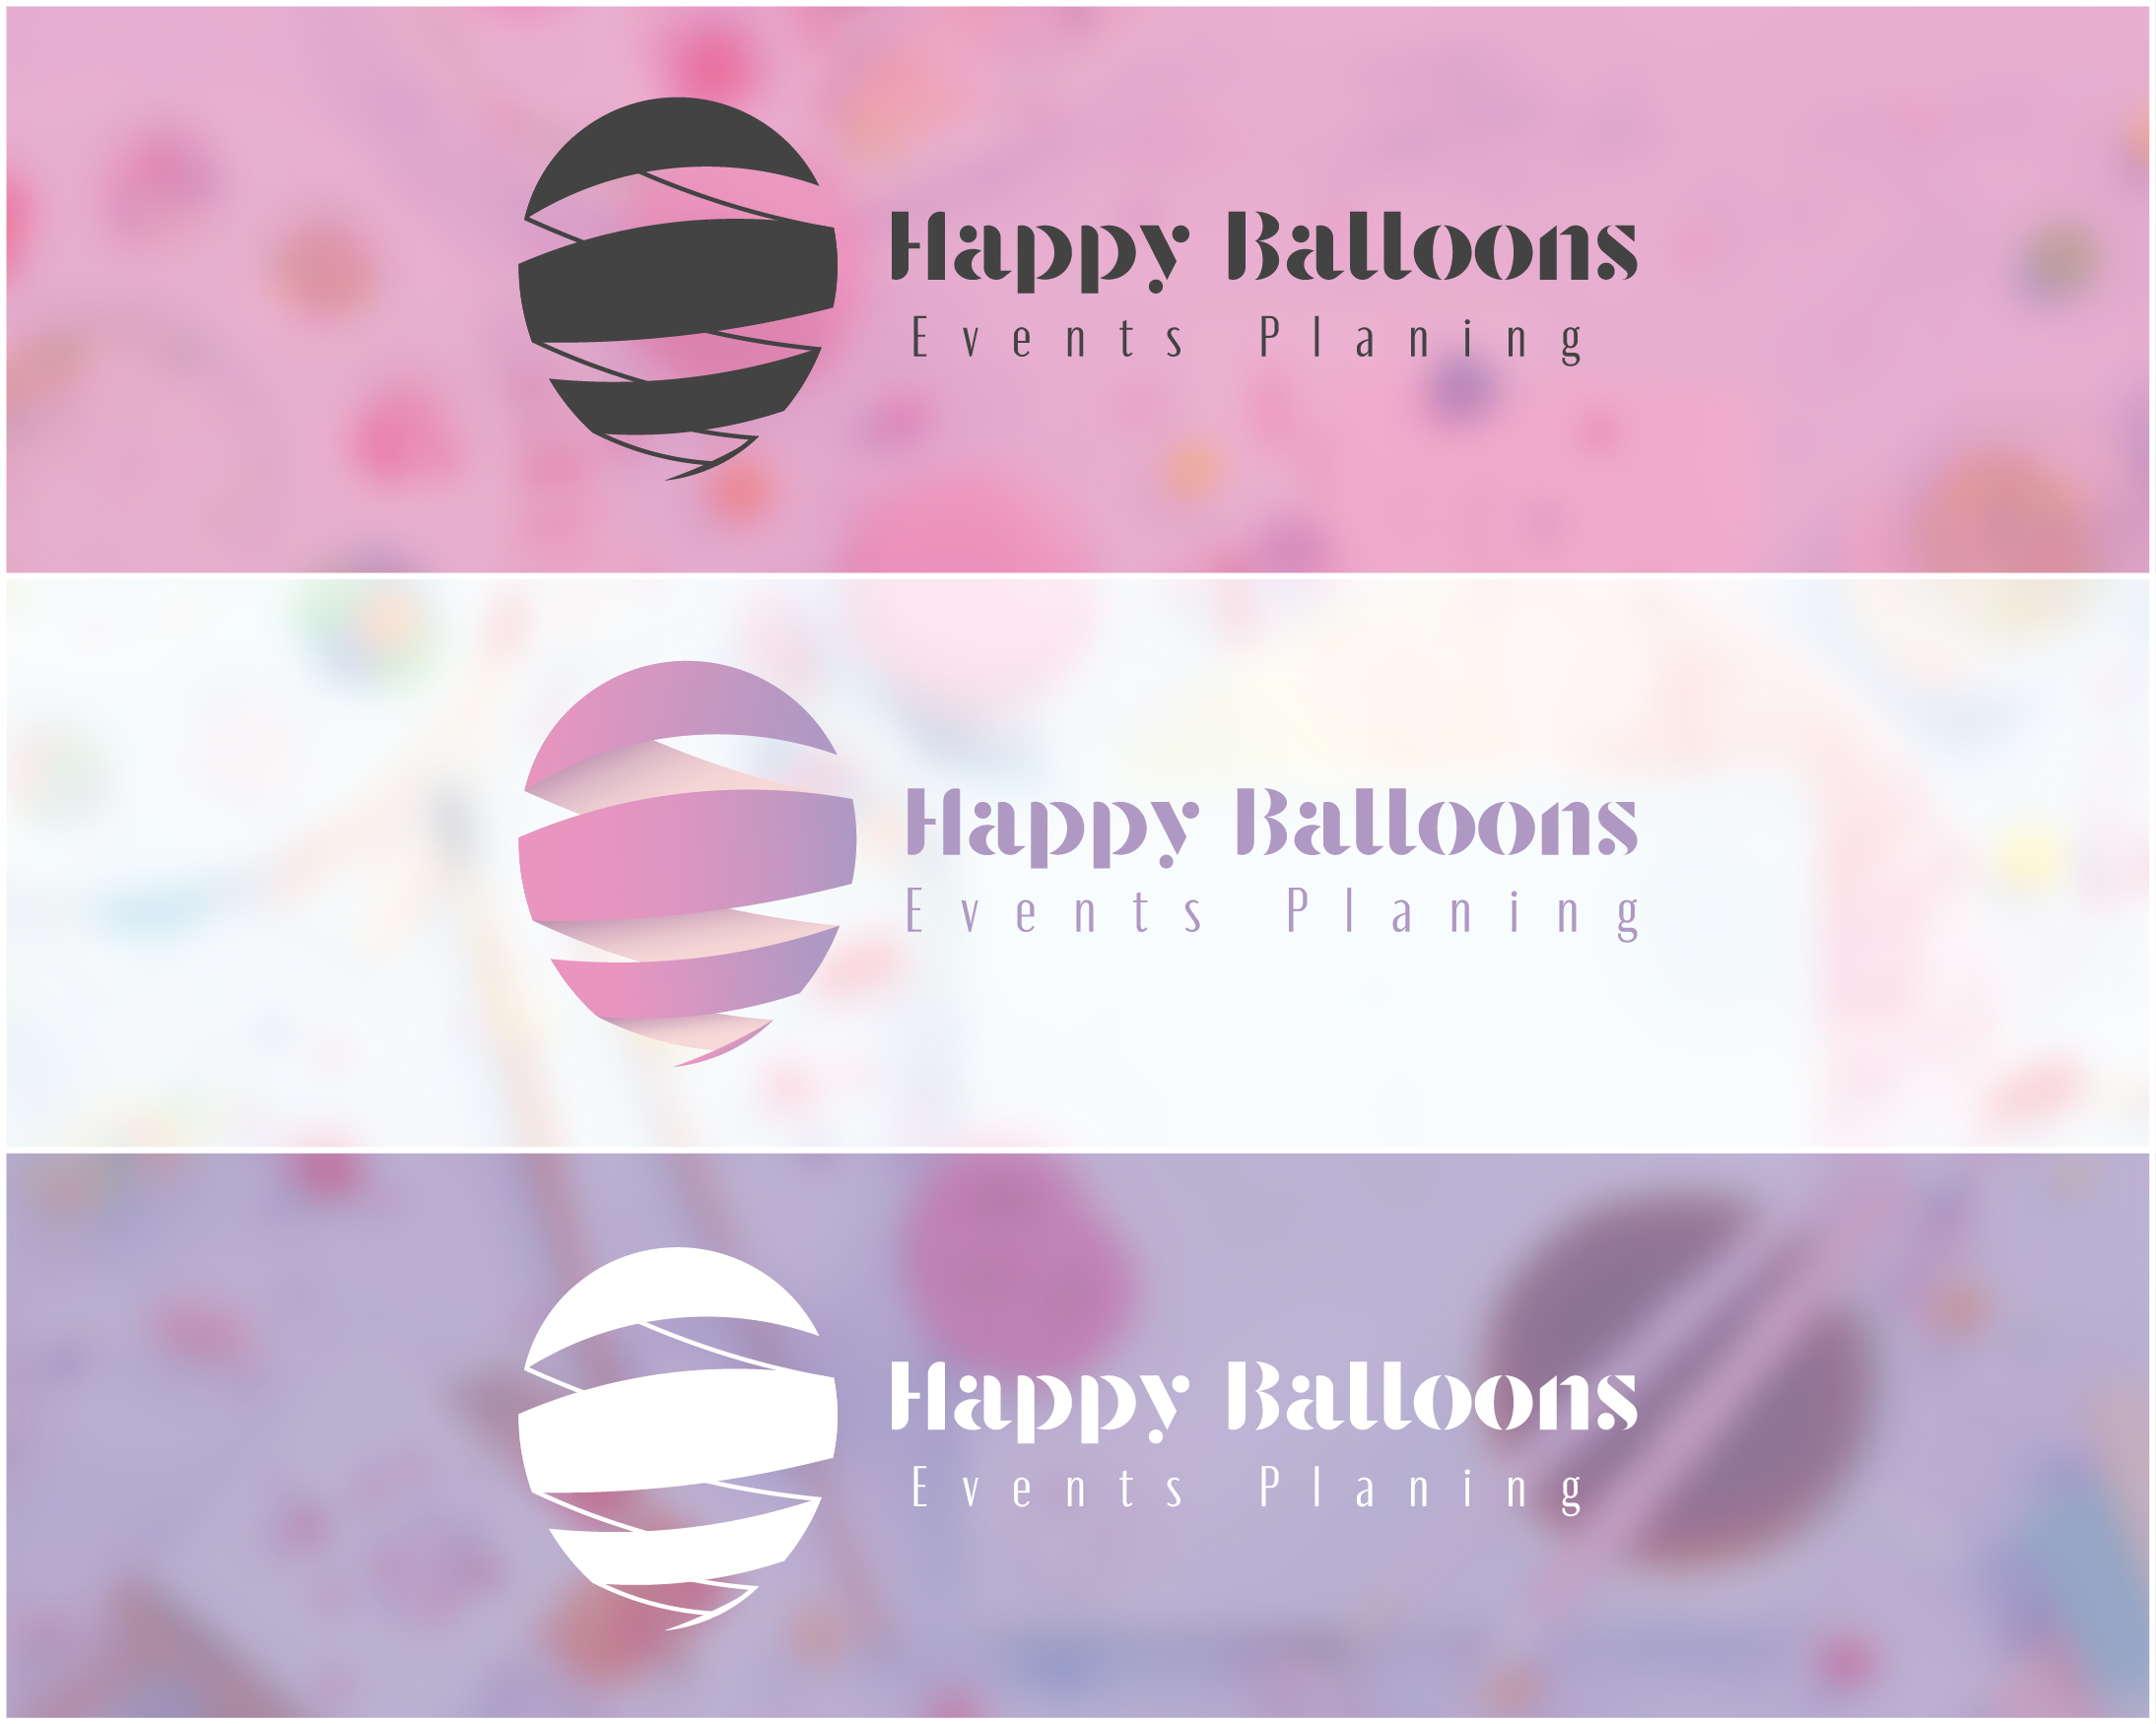 Happy Balloons - 1